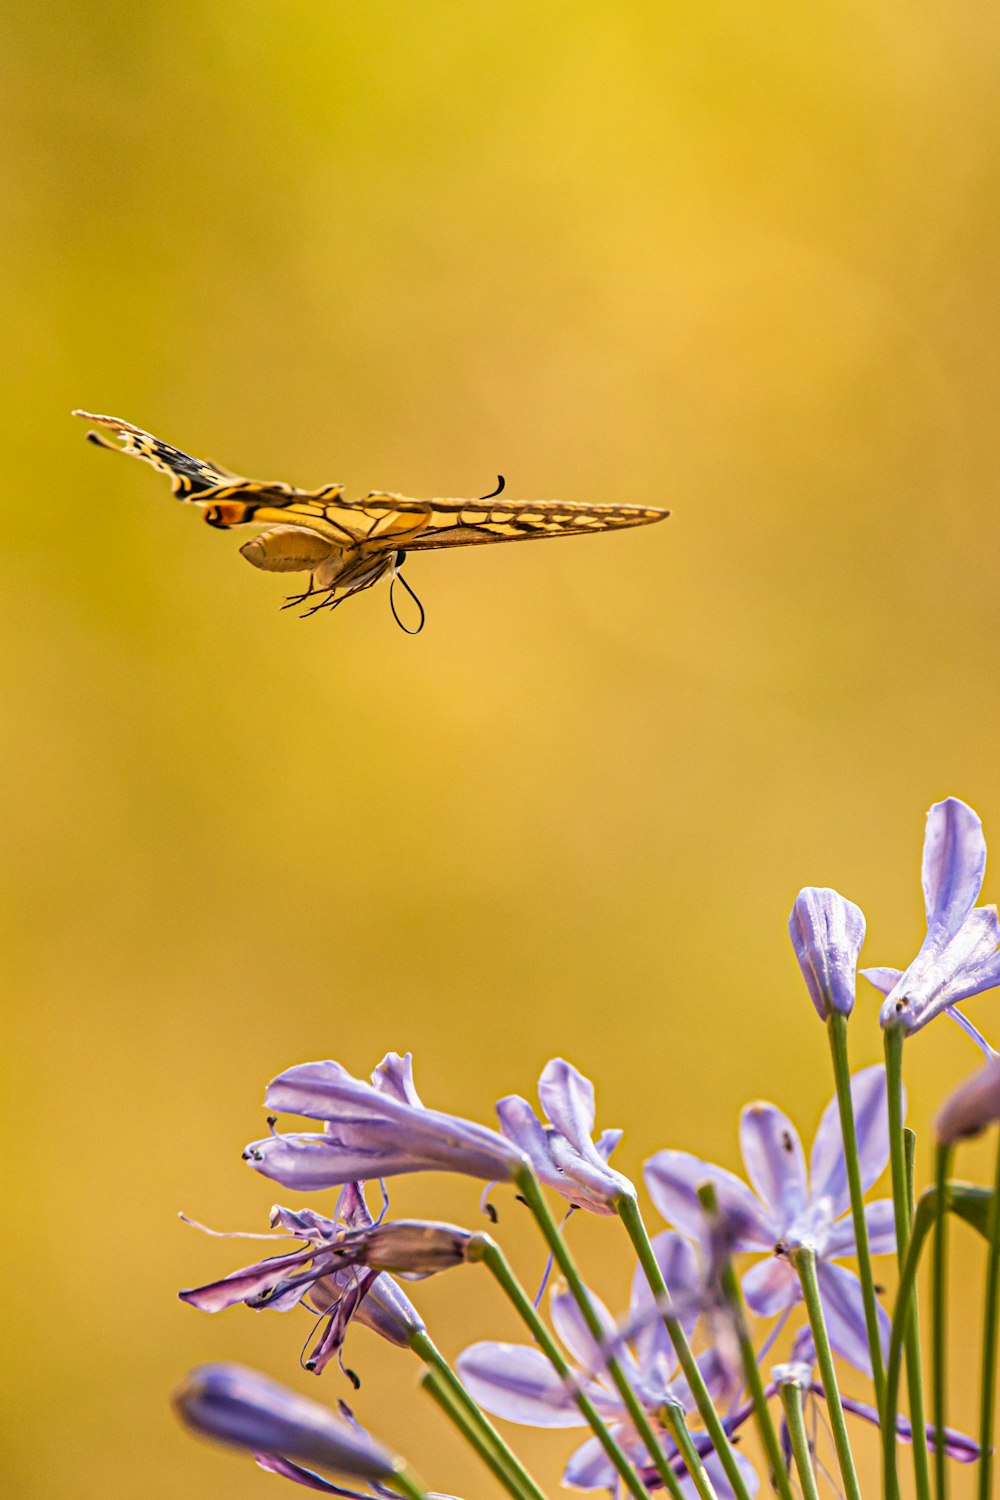 libélula marrom e preta empoleirada na flor roxa em fotografia de perto durante o dia